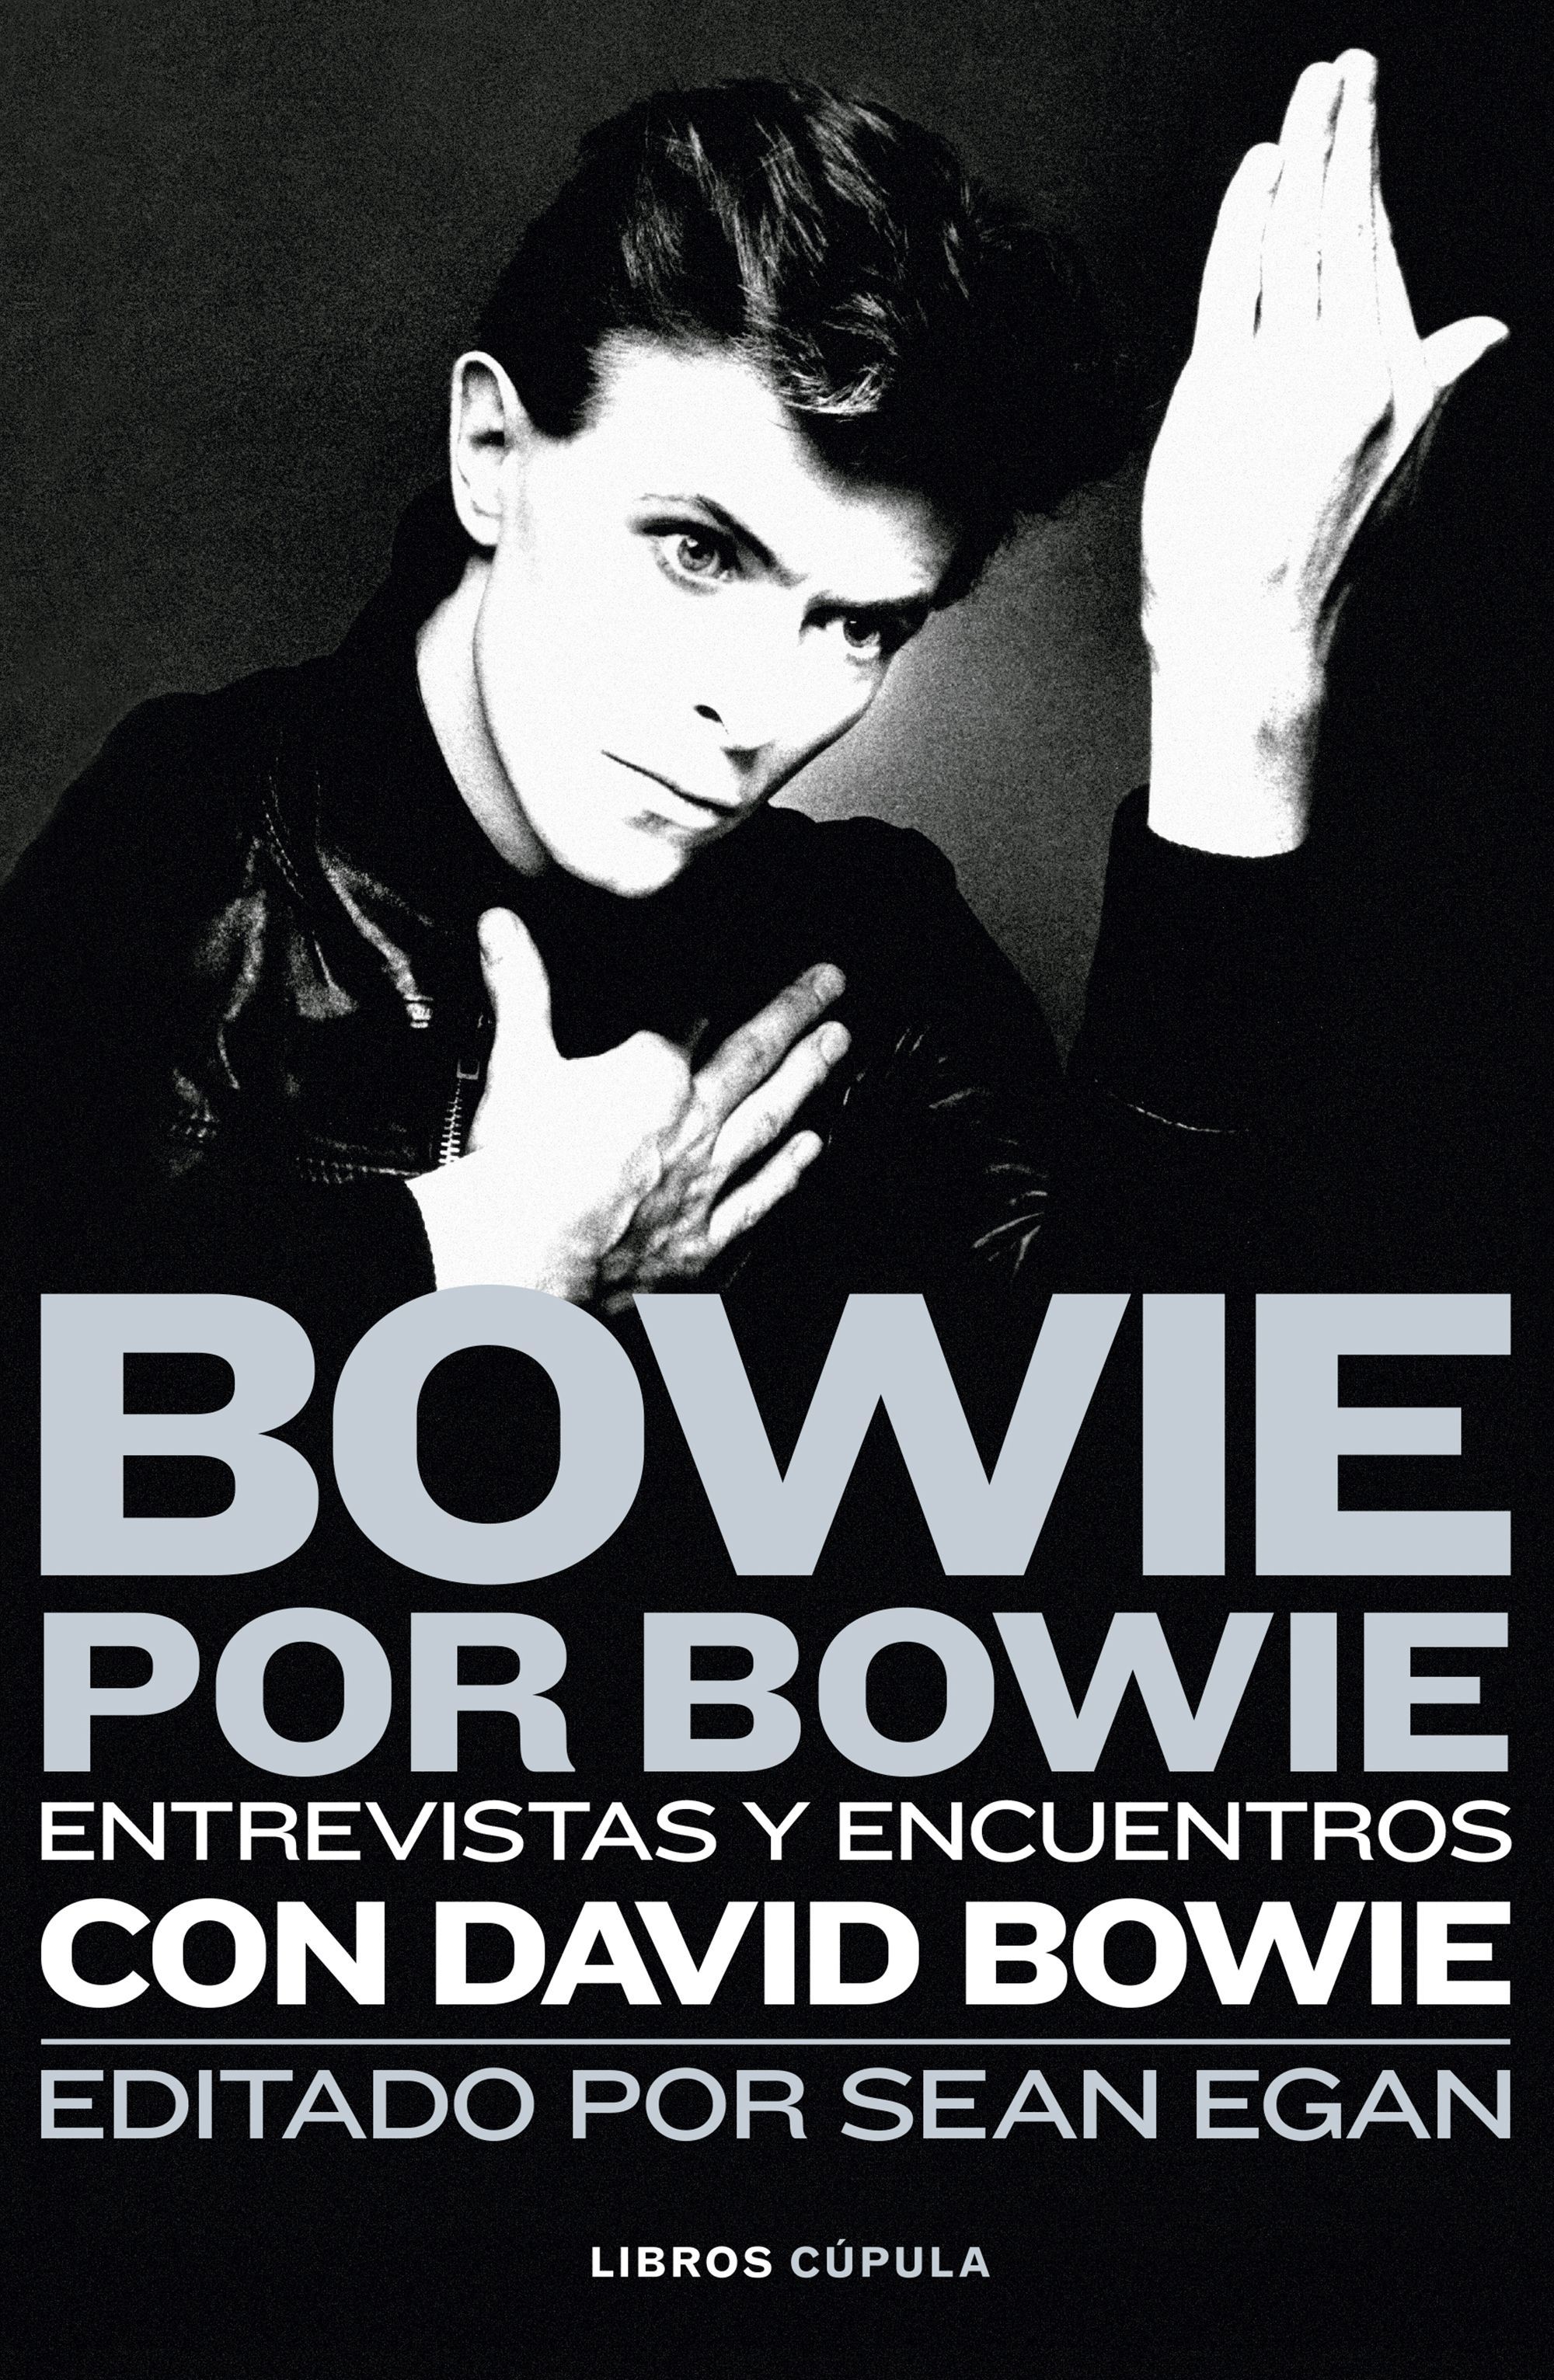 'Bowie por Bowie. Entrevistas y encuentros con David Bowie', una autobiografía relatada del genio